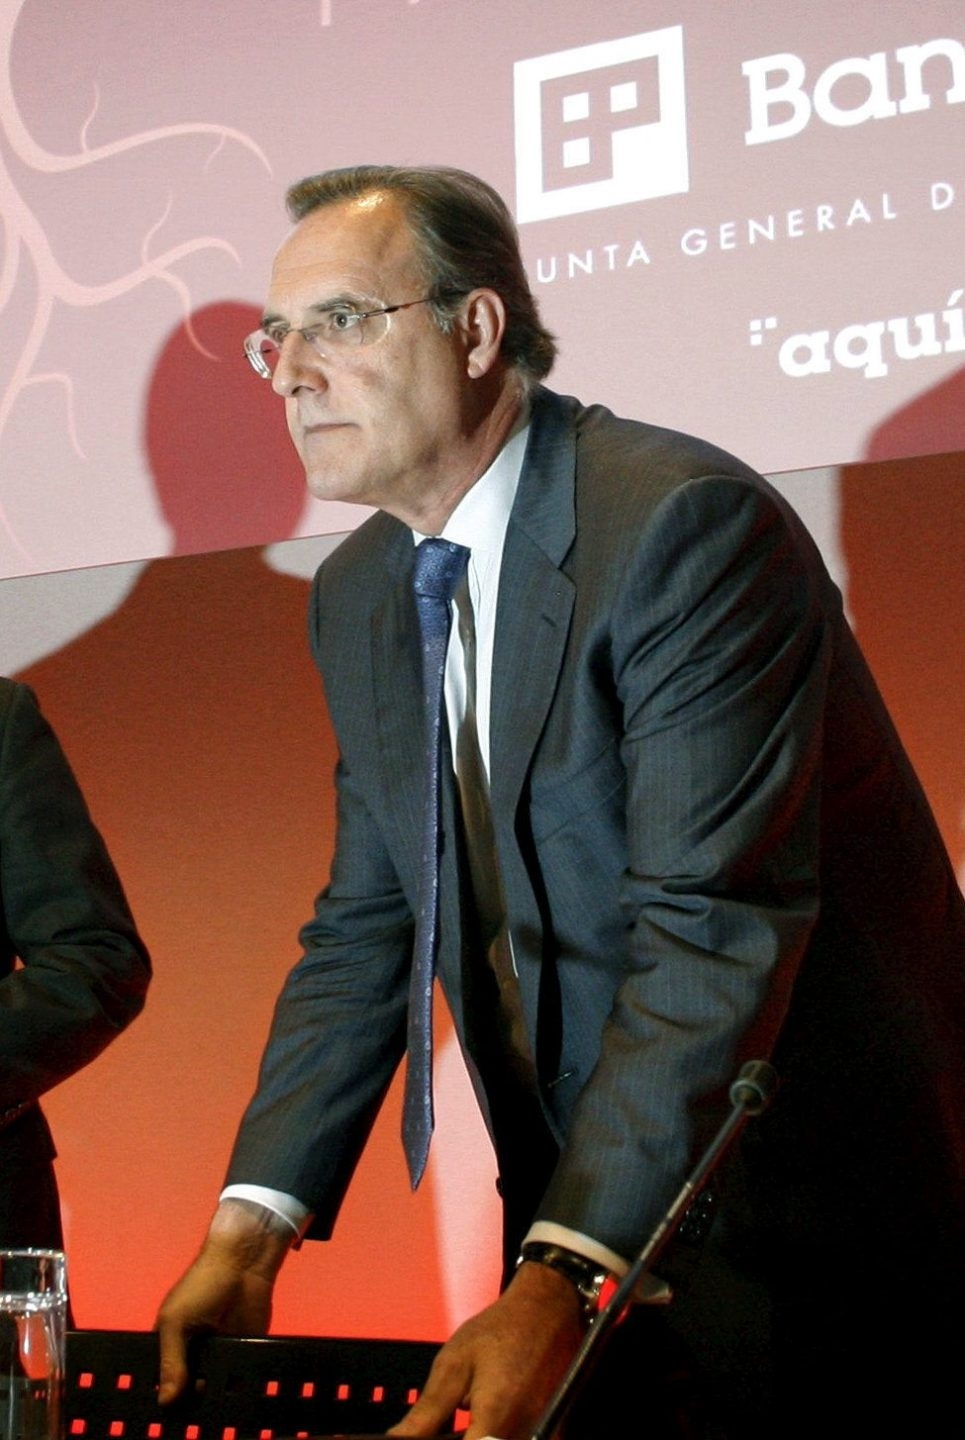 El expresidente del Banco Pastor, José María Arias, investigado por la Justicia por la posible vinculación de la entidad con la trama Gürtel.